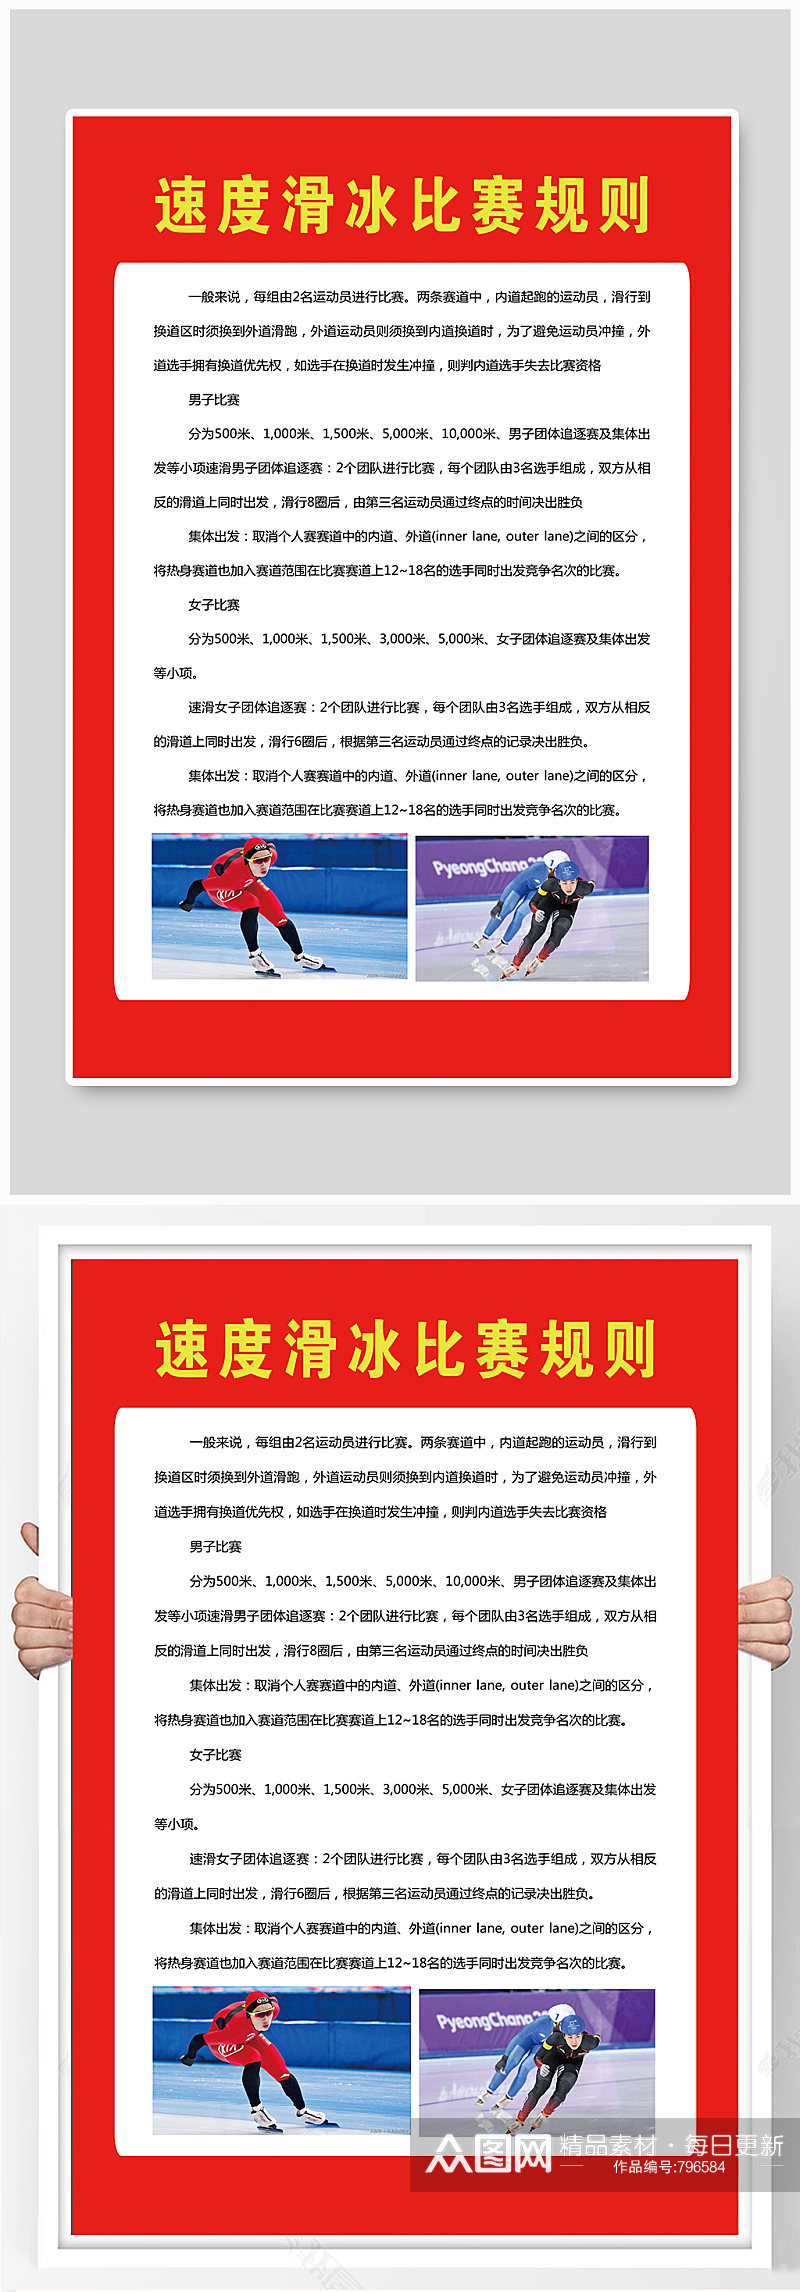 滑冰海报滑冰运动素材